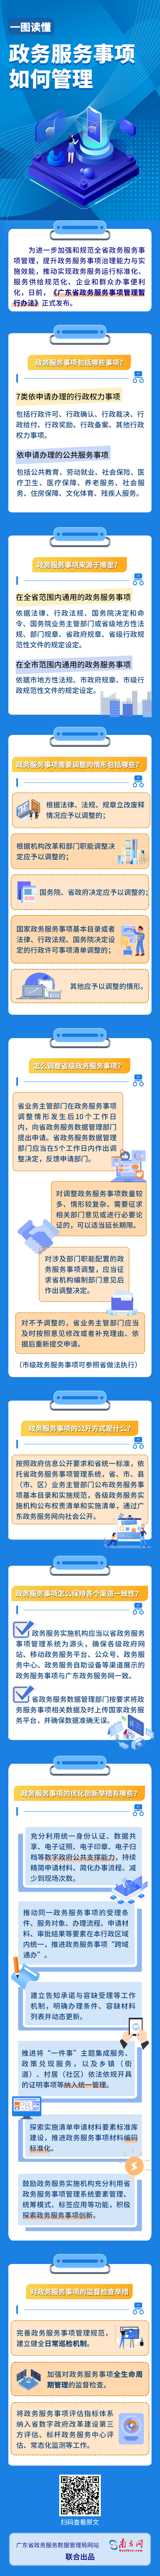 一图读懂《广东省政务服务事项管理暂行办法》.png